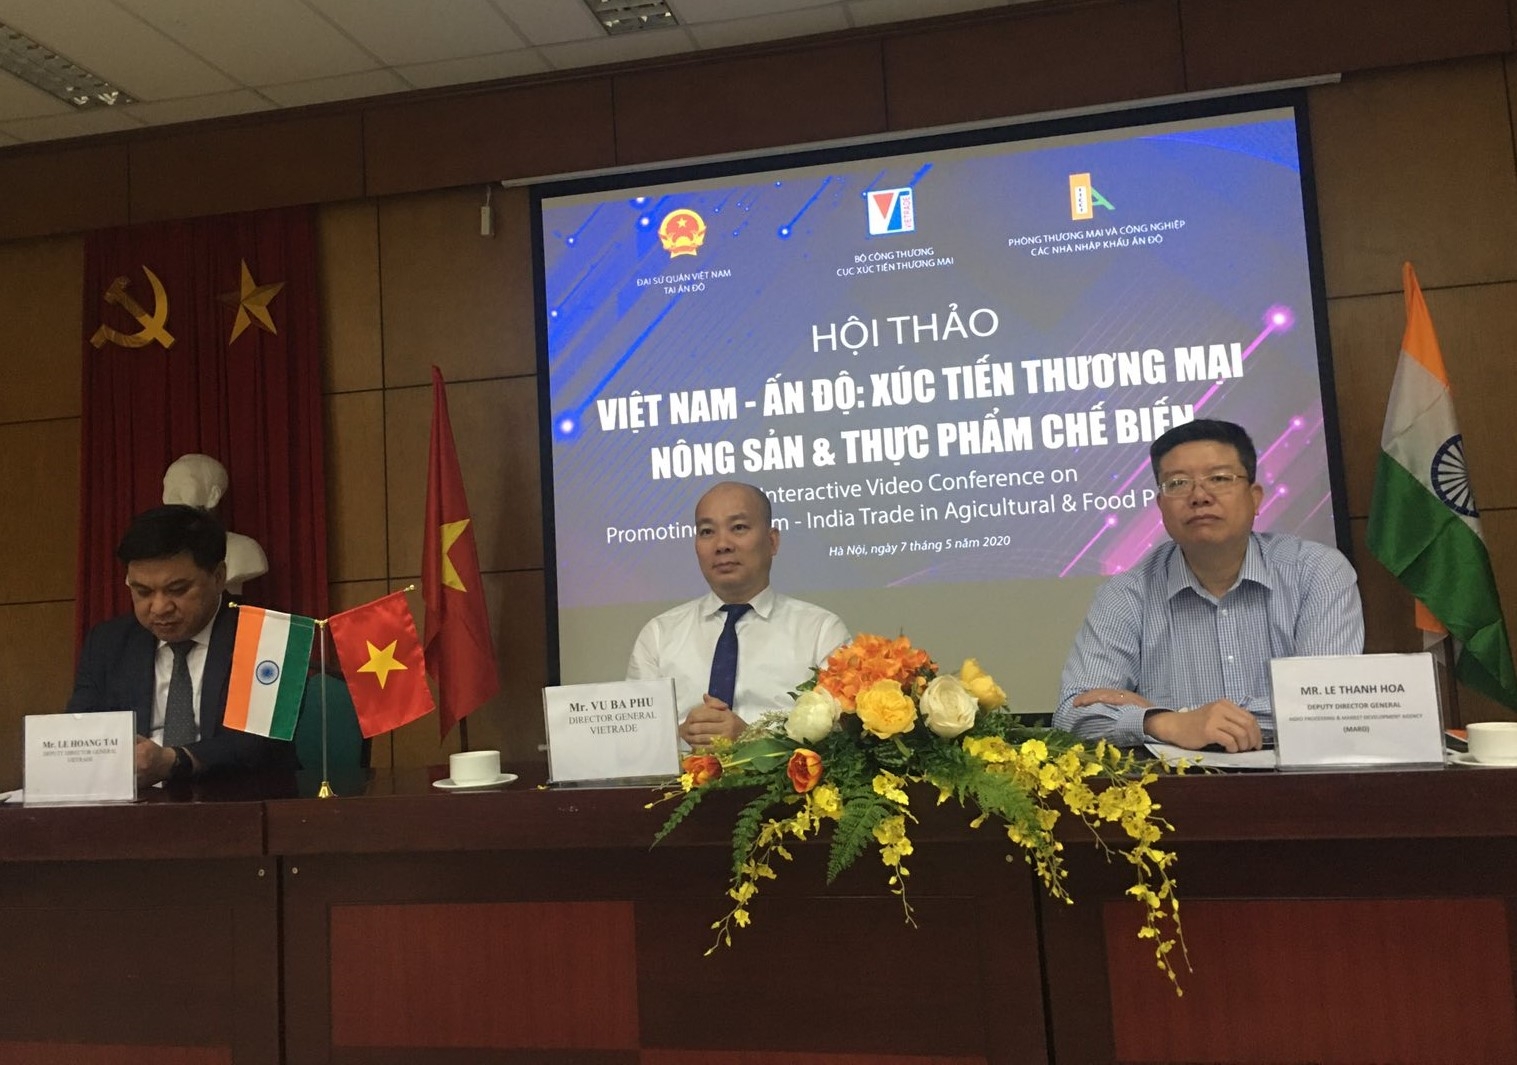 Xúc tiến thương mại nông sản, thực phẩm Việt Nam - Ấn Độ: Không vì Covid-19 mà chùn bước giao thương